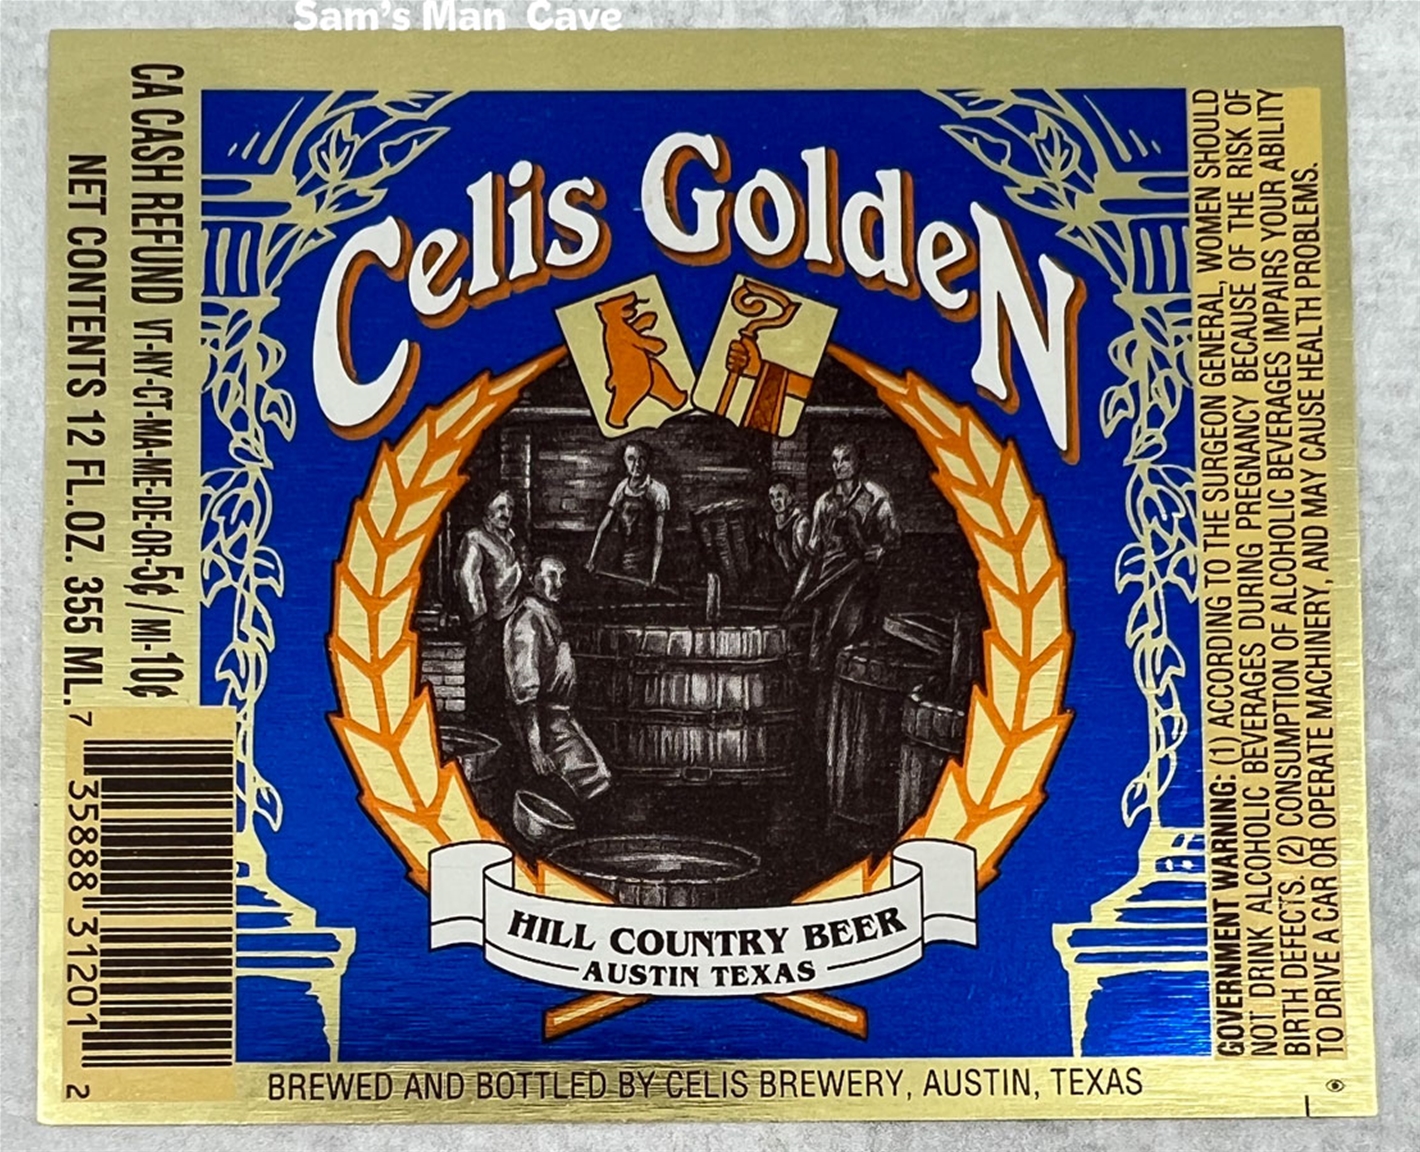 Celis Golden Beer Label